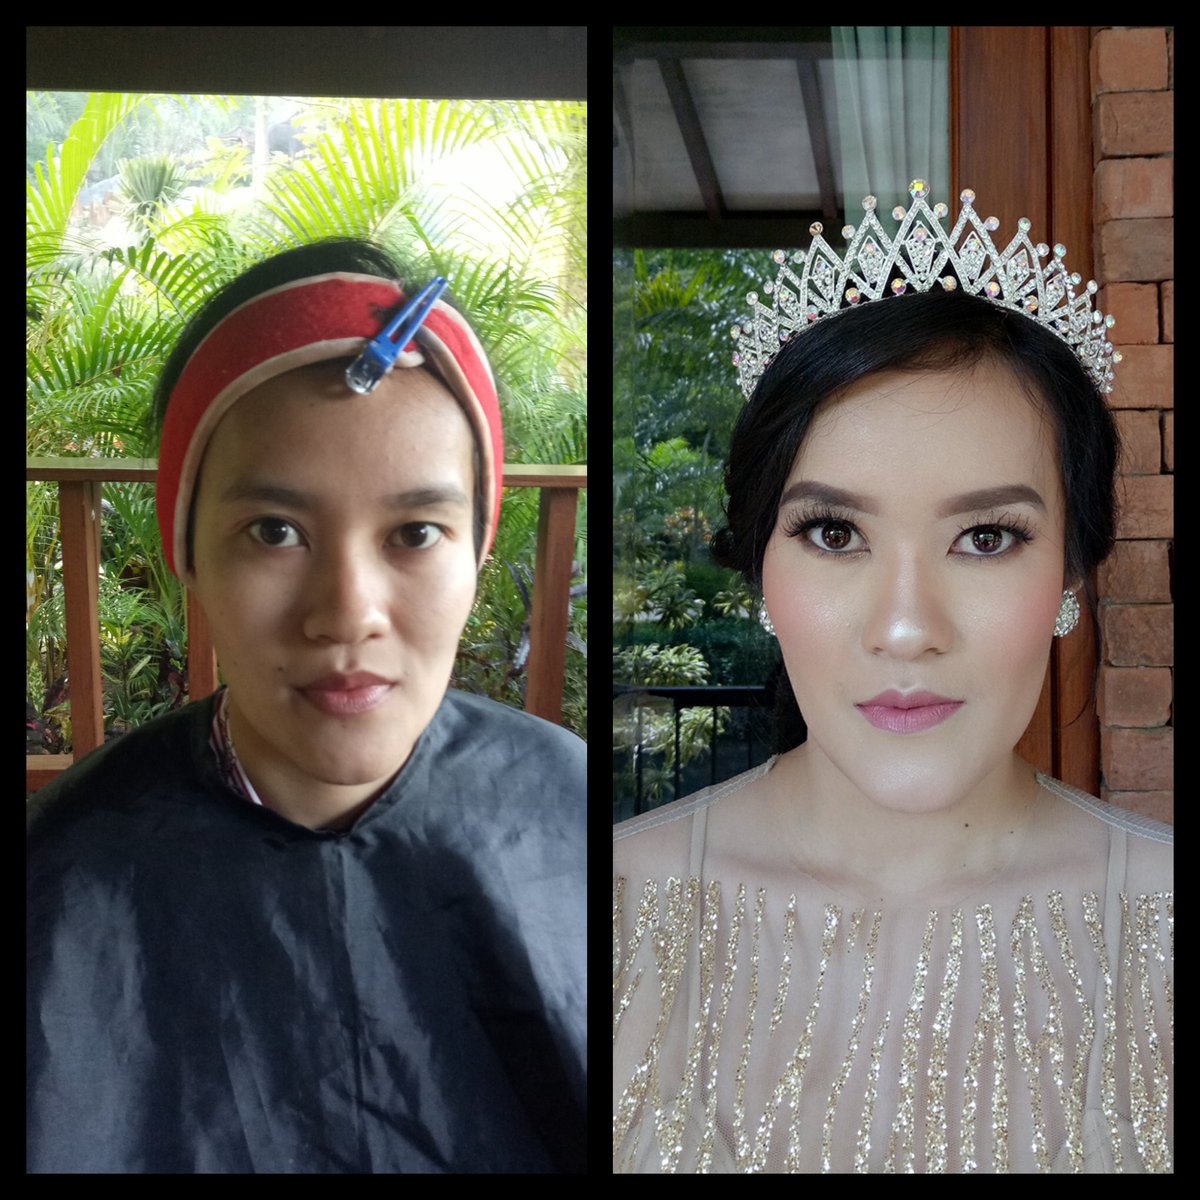 Makeup for prewedding today 😇 flawless glow so shining 💜 #makeupmalang #preweddingmalang